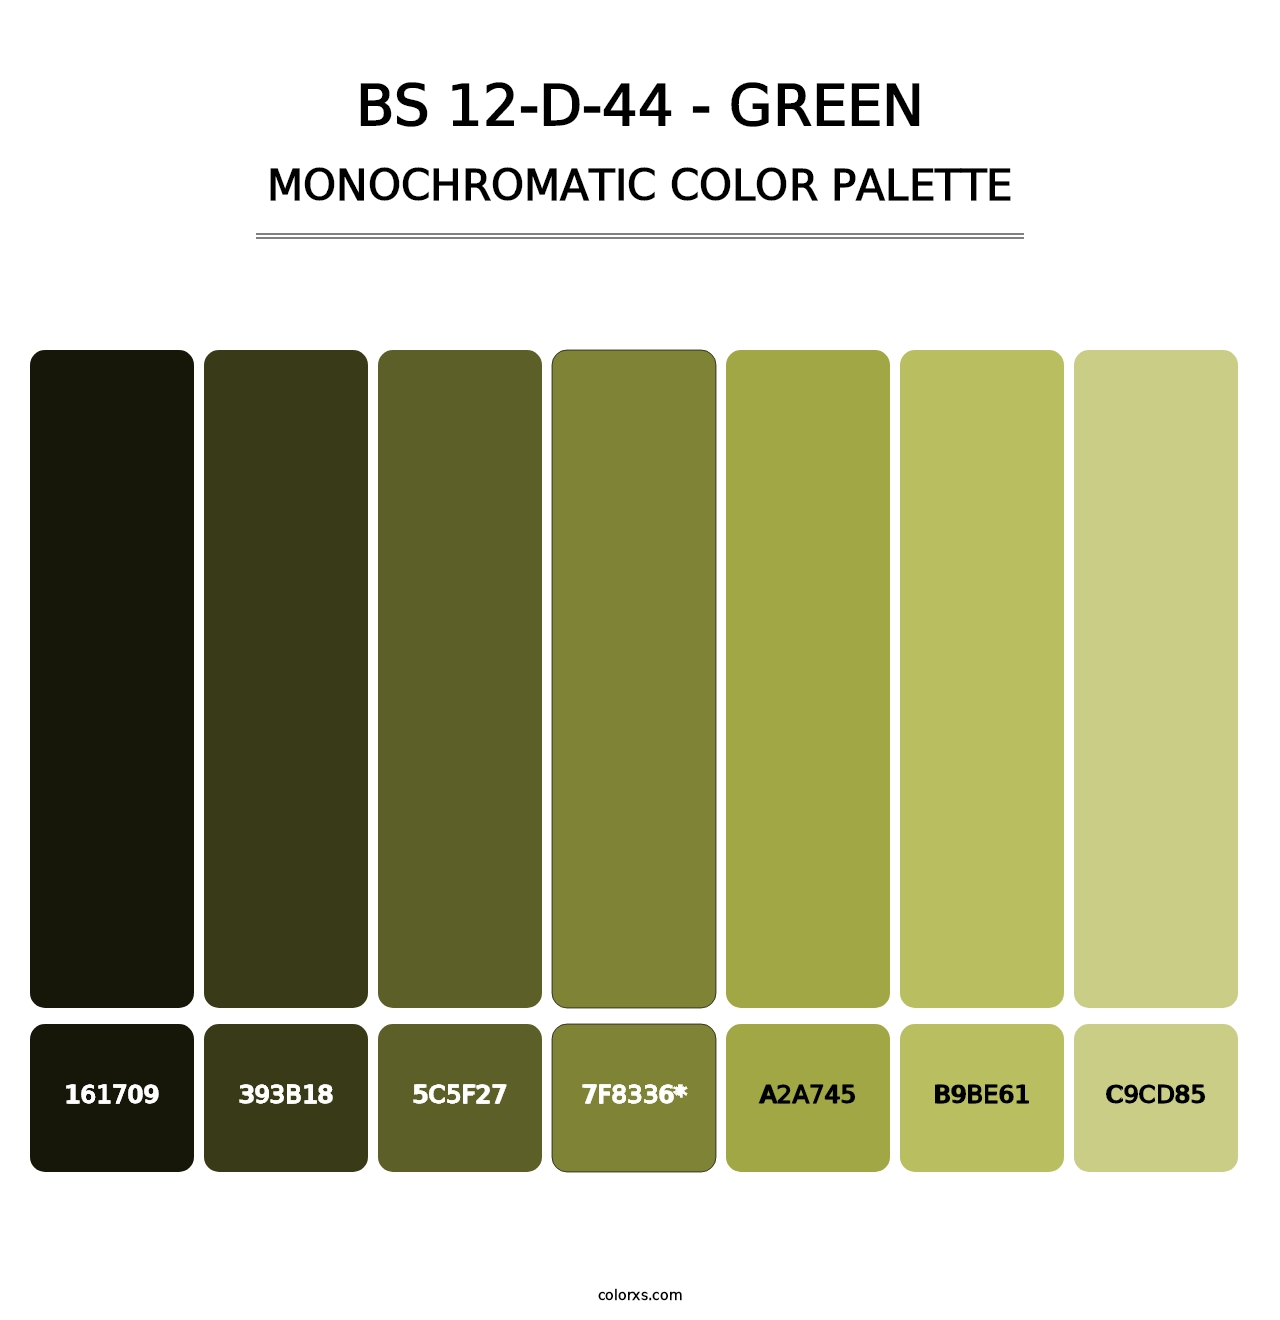 BS 12-D-44 - Green - Monochromatic Color Palette